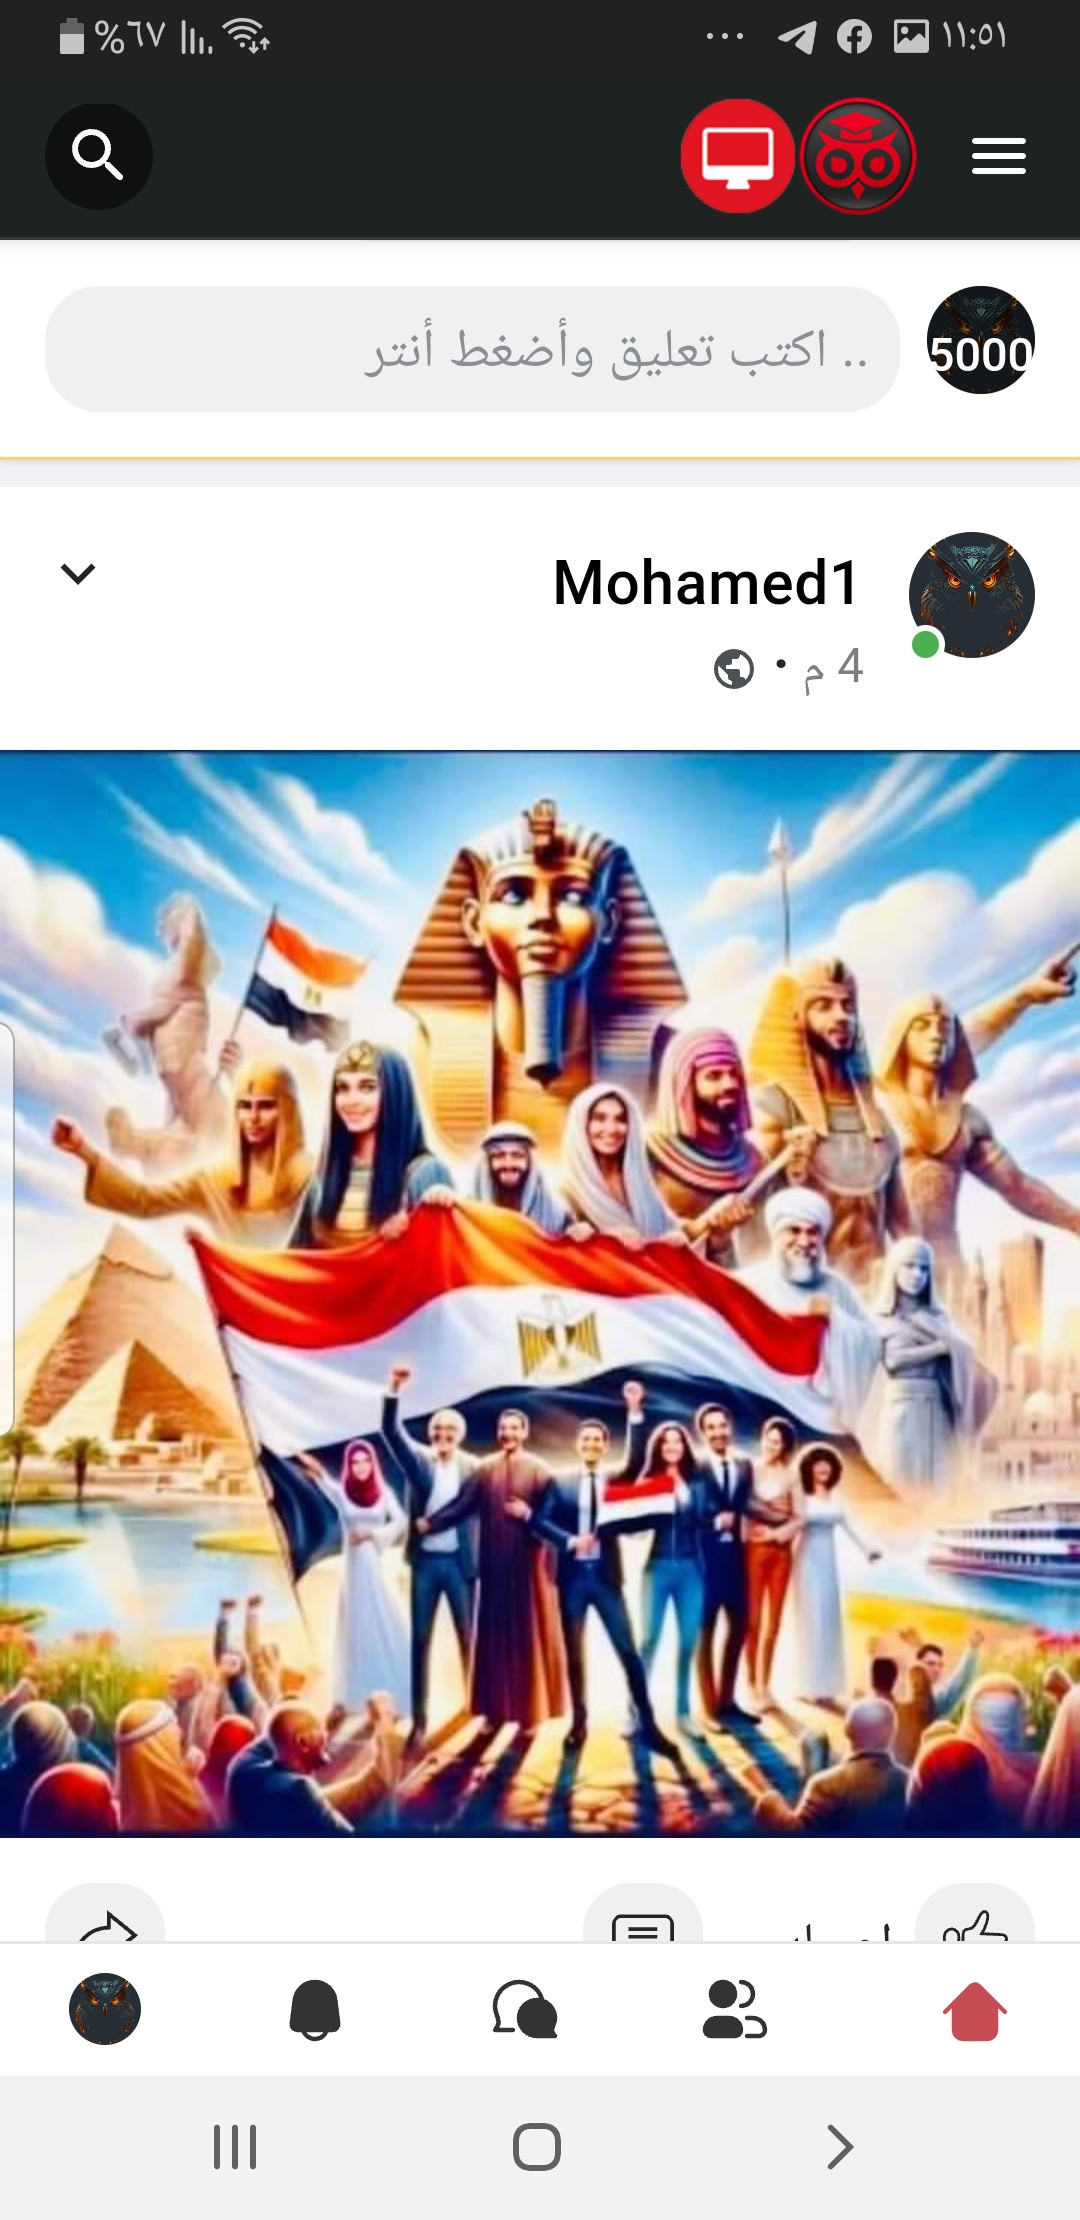 Mohamed1